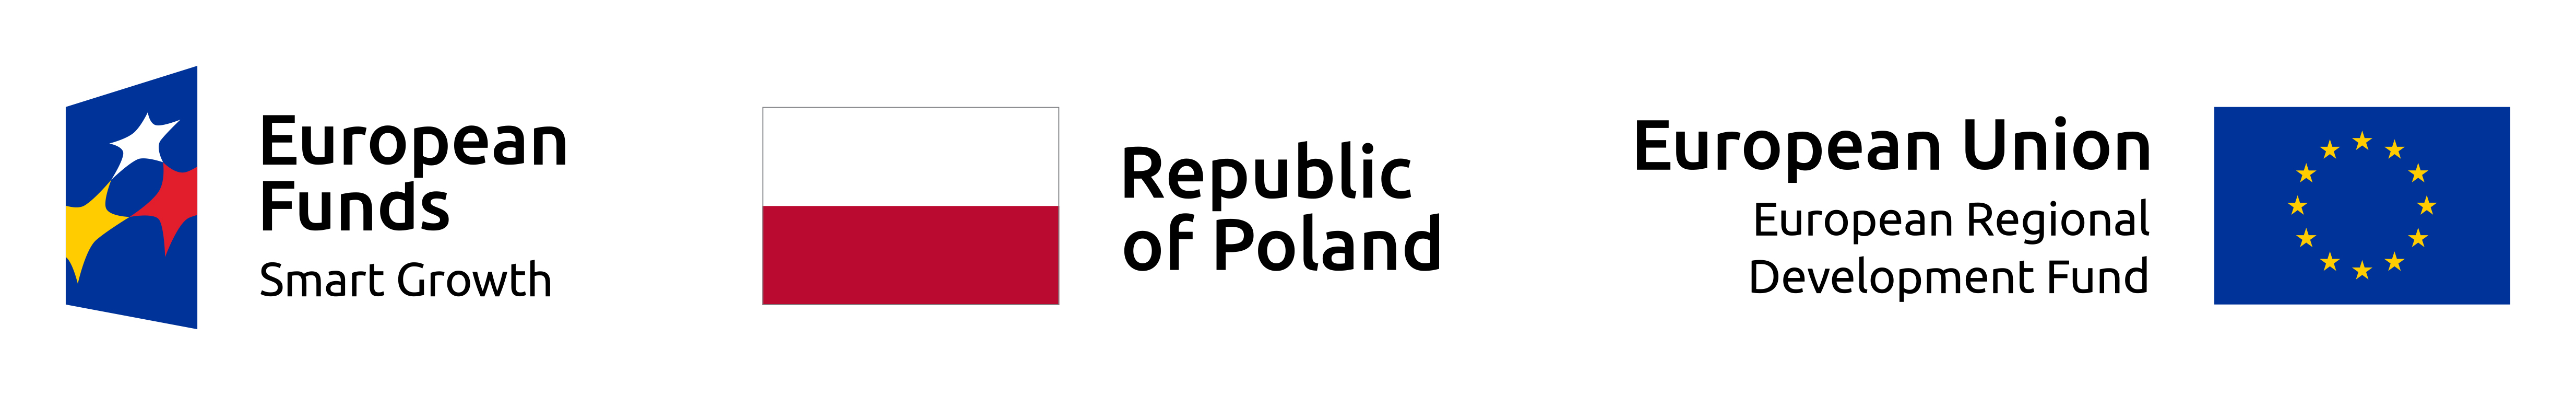 European Funds, Republic of Poland, European Union